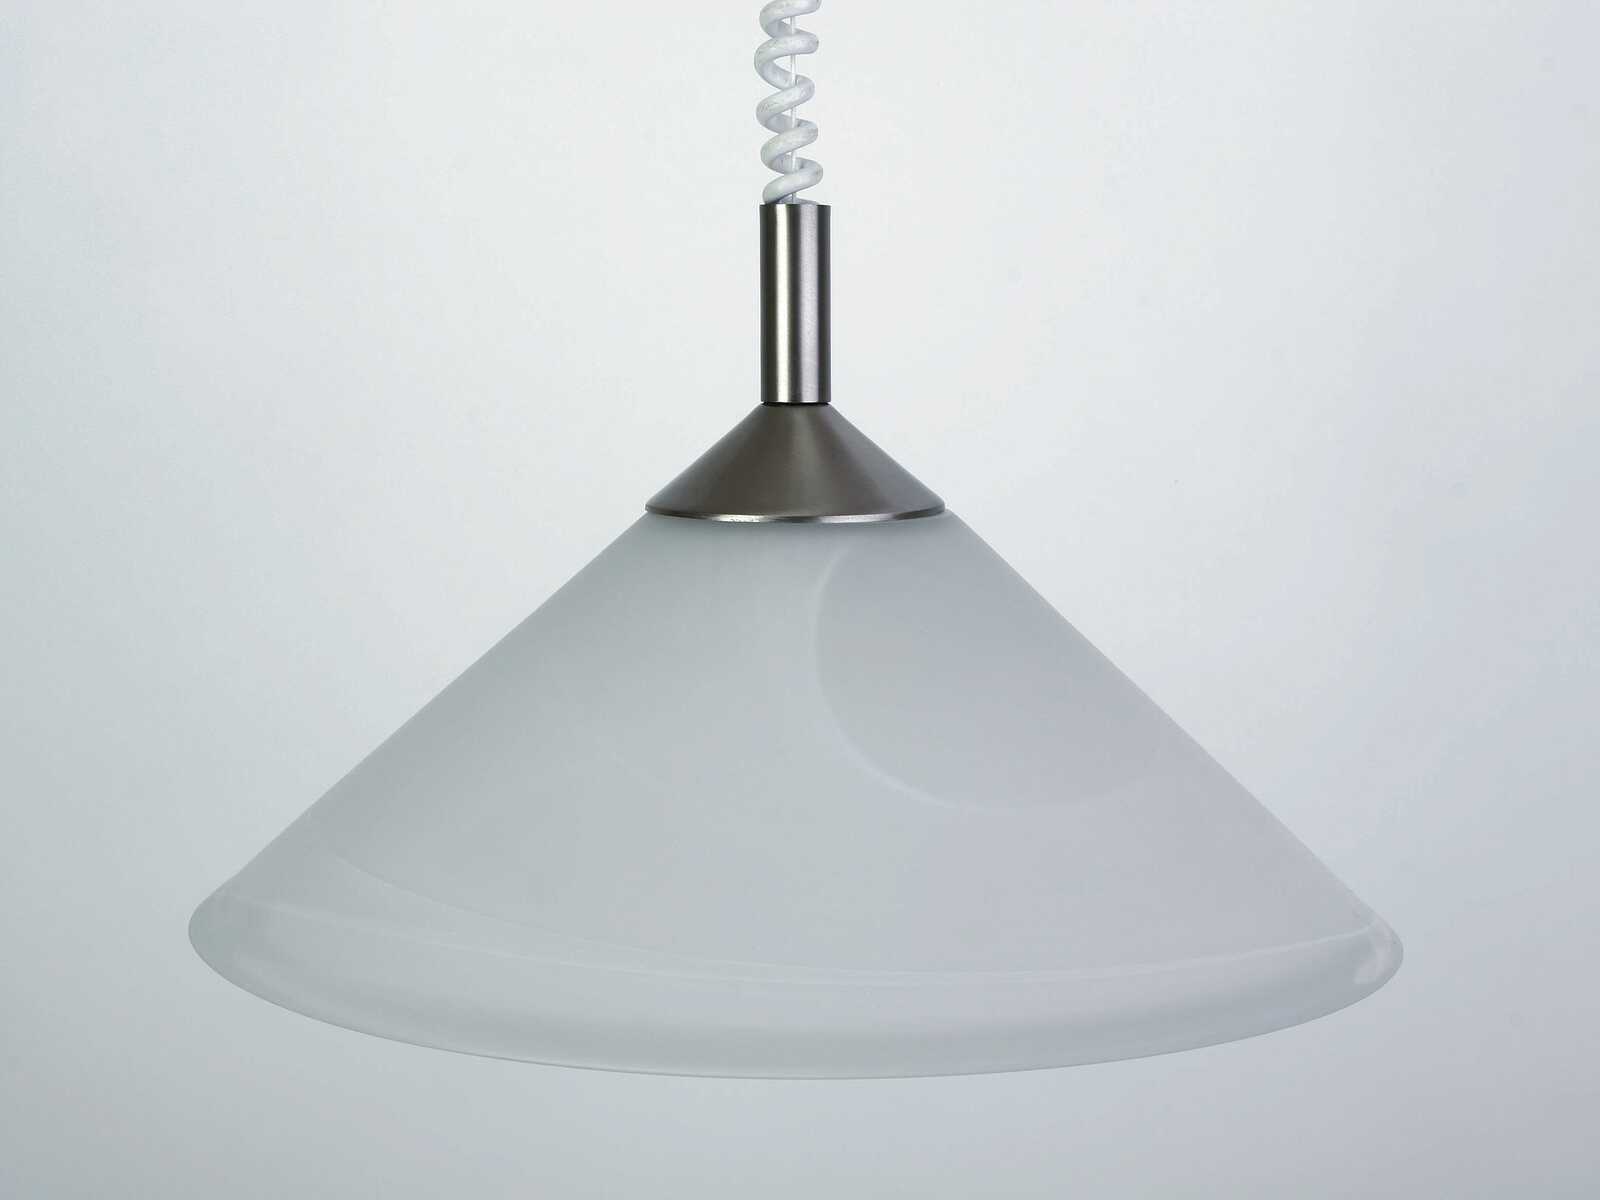             Glazen hanglamp - Alva - zilver, wit
        